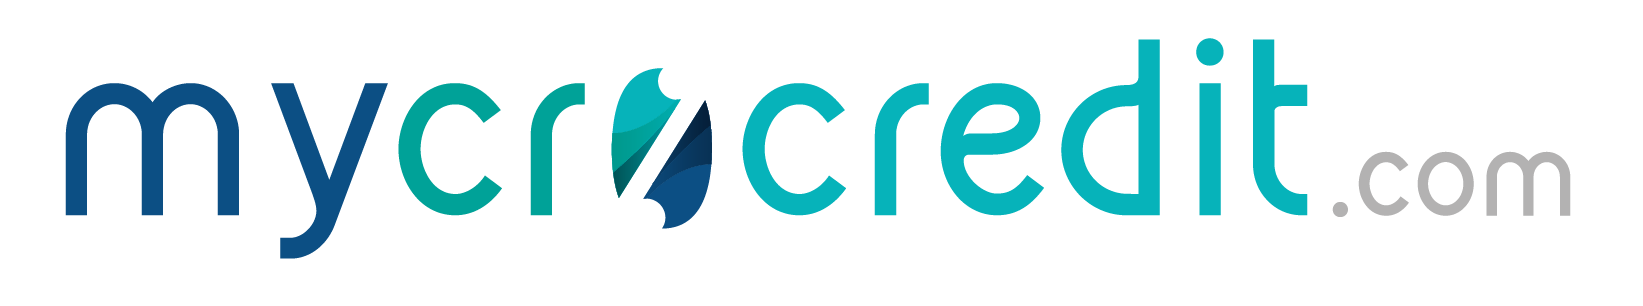 logo mycrocredit.com